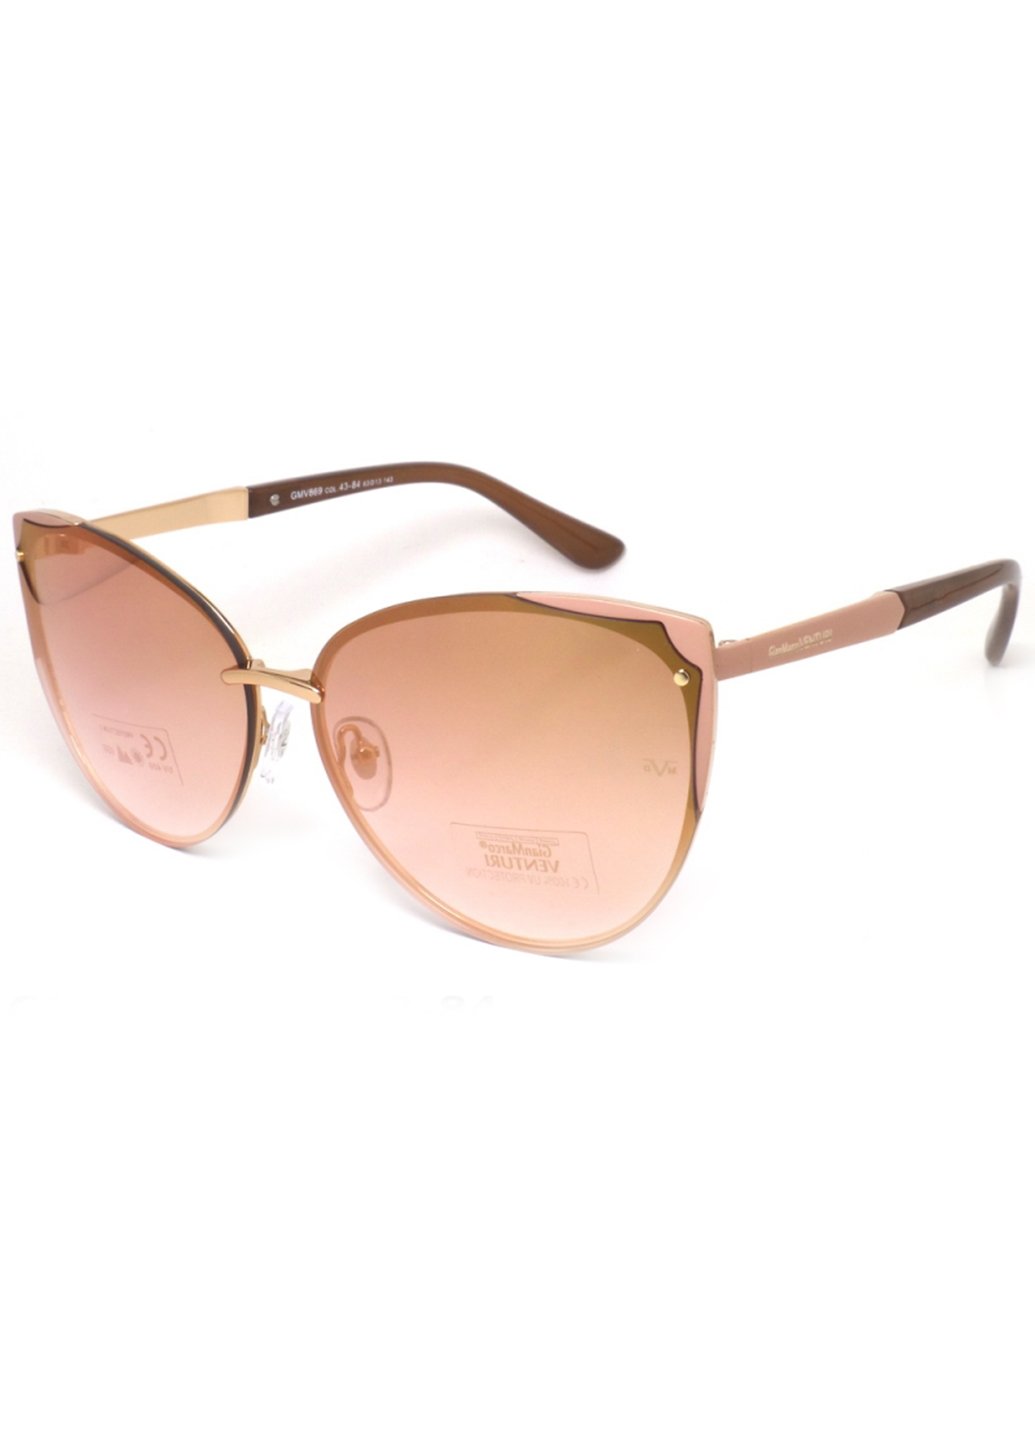 Купить Женские солнцезащитные очки Gian Marco VENTURI GMV869 130014 - Розовый в интернет-магазине